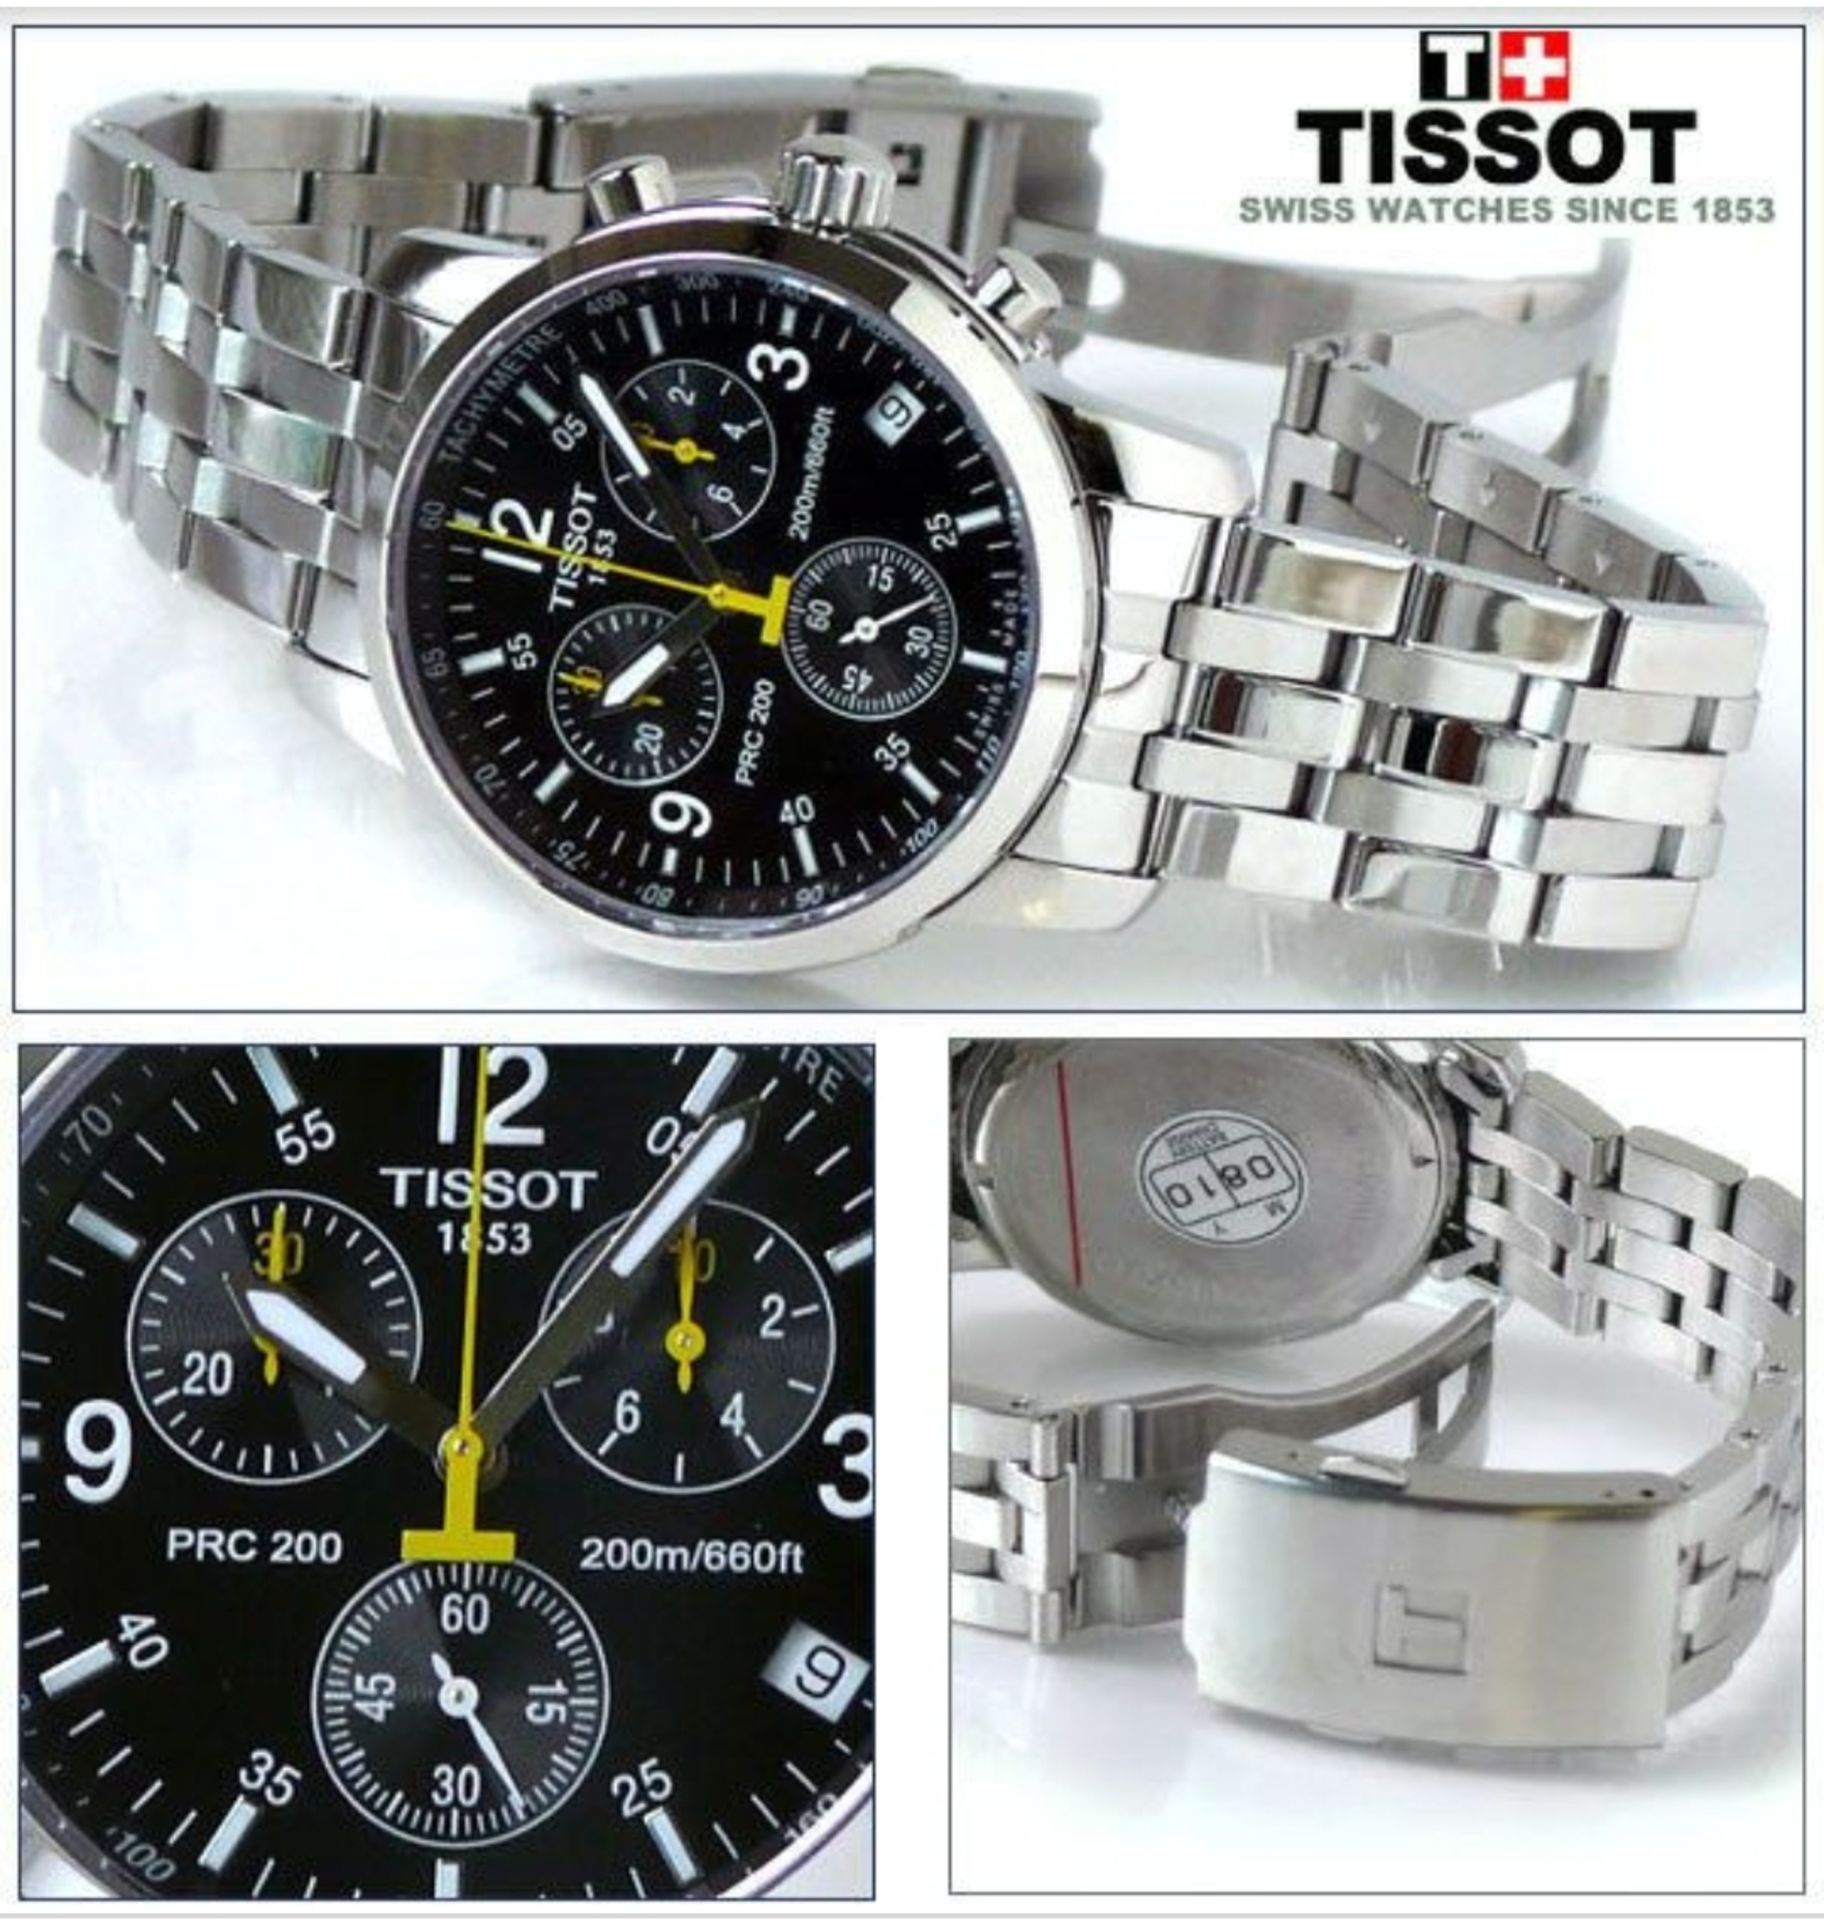 Tissot T17.1.586.52 PRC 200 Men's Chronograph Quartz Watch - Image 7 of 11